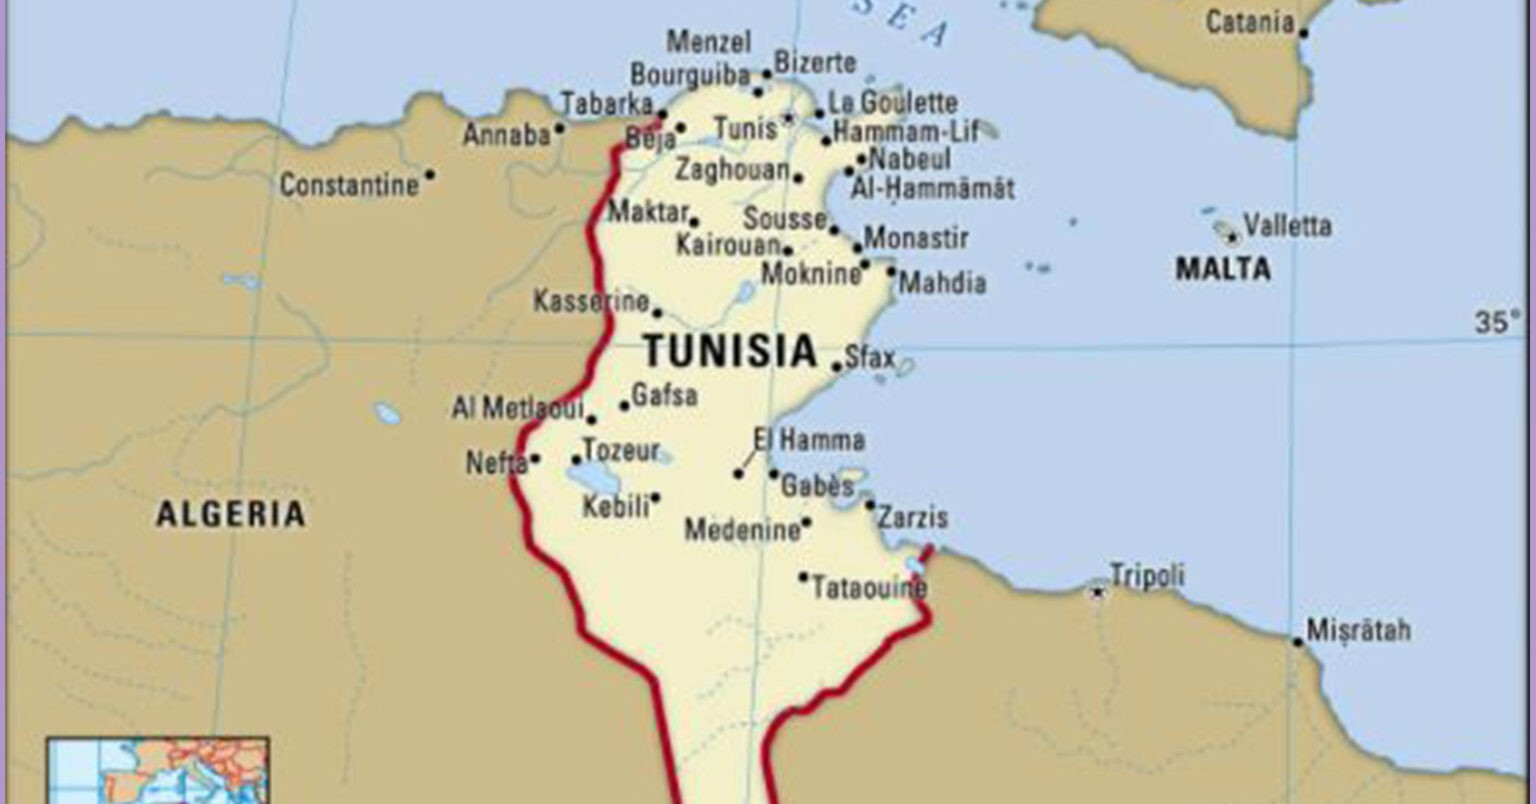 ट्युनिसियामा राष्ट्रपतिको कारबाहीपछि सयौँ आप्रवासीको भागभाग